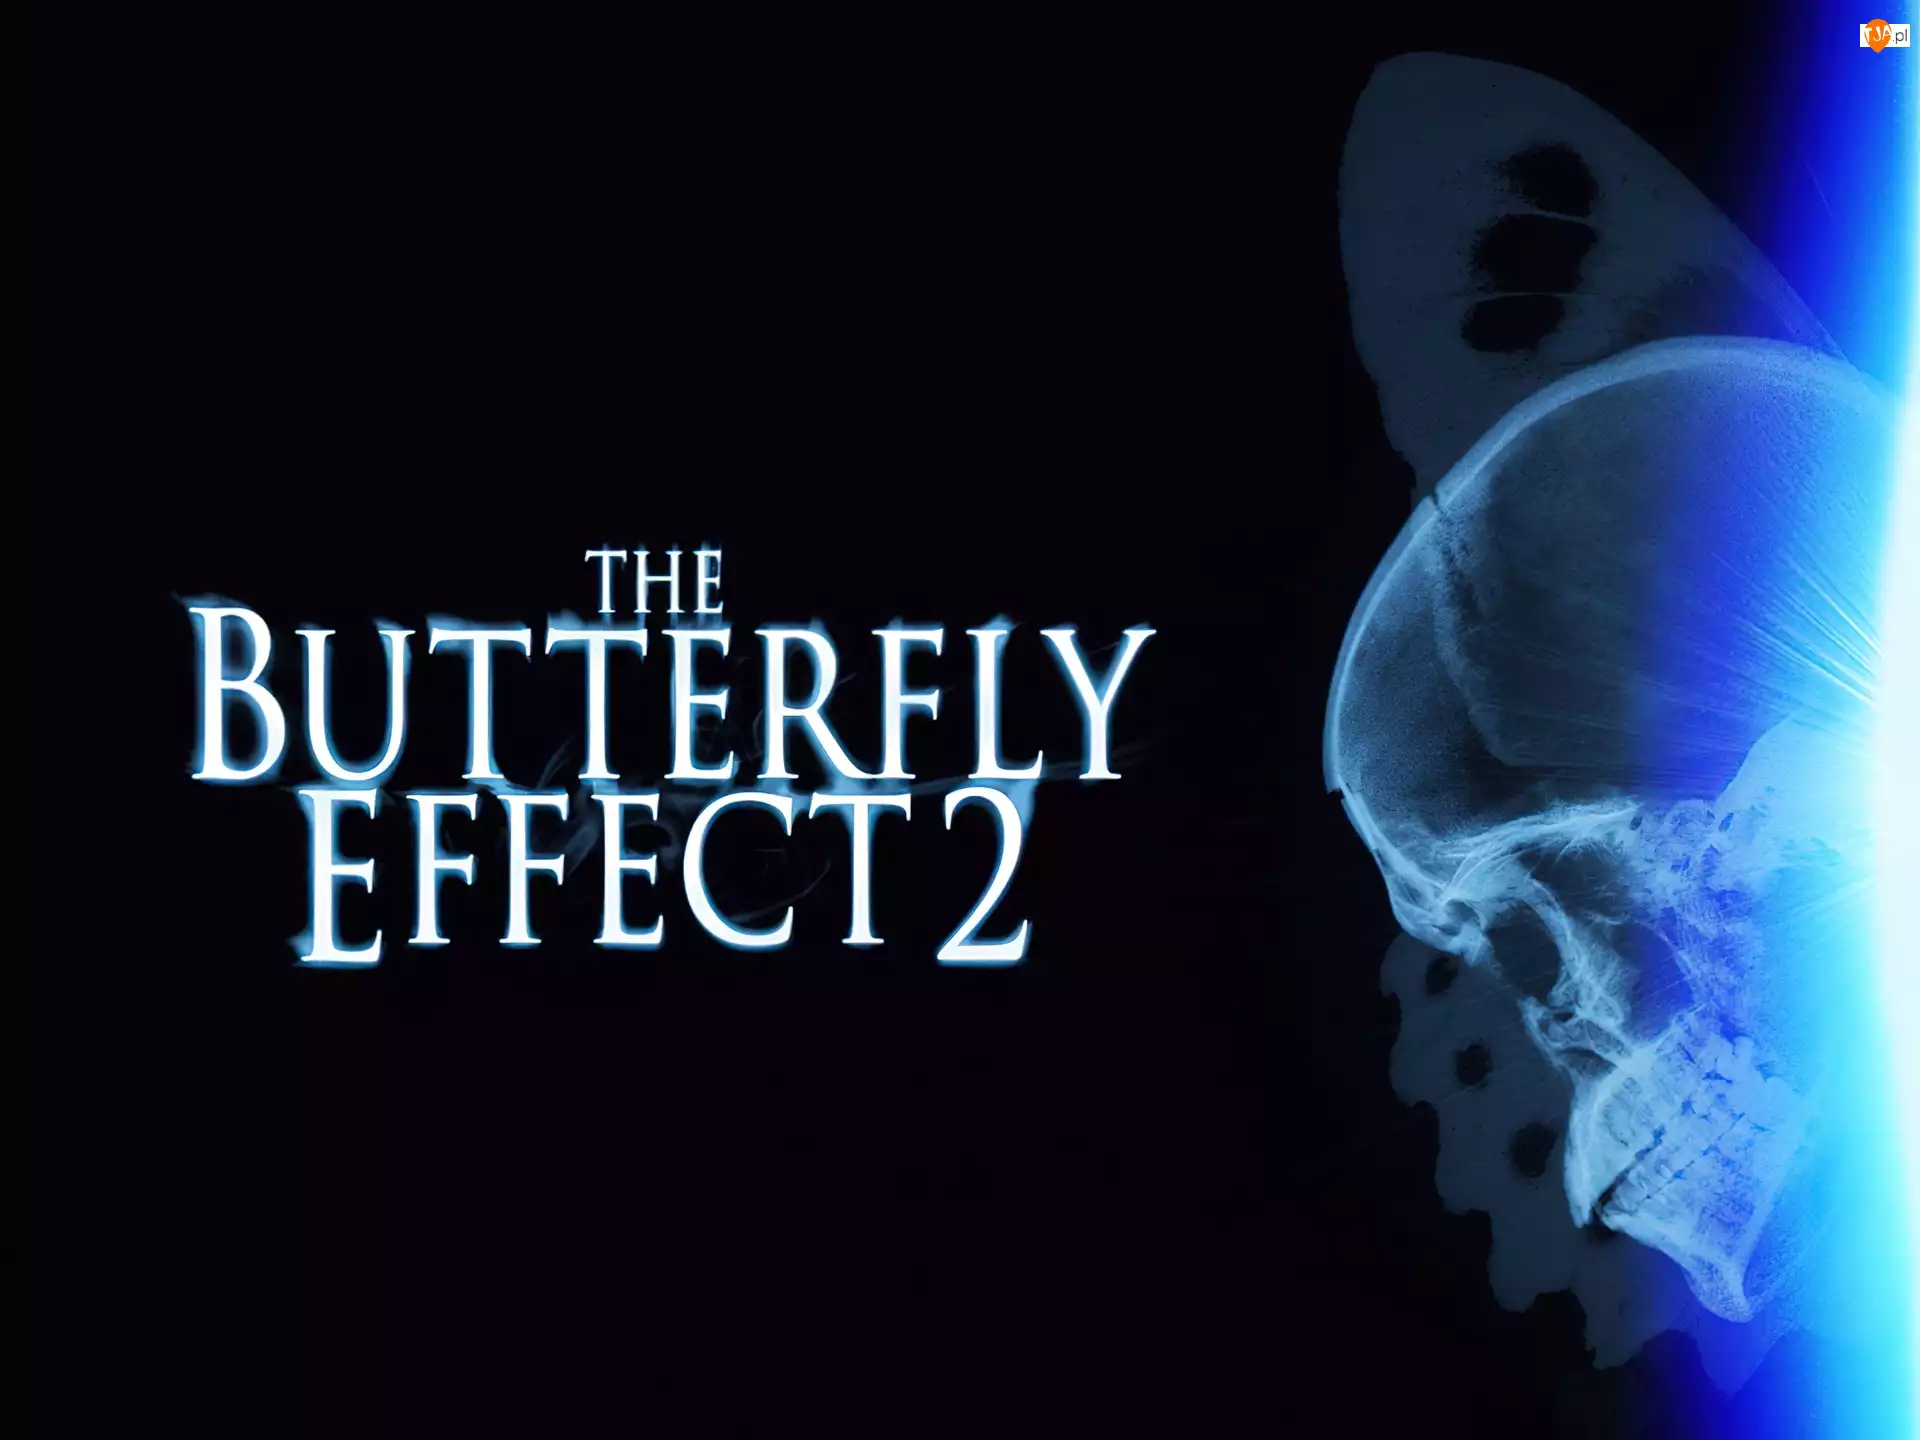 napis, Butterfly Effect 2, czaszka